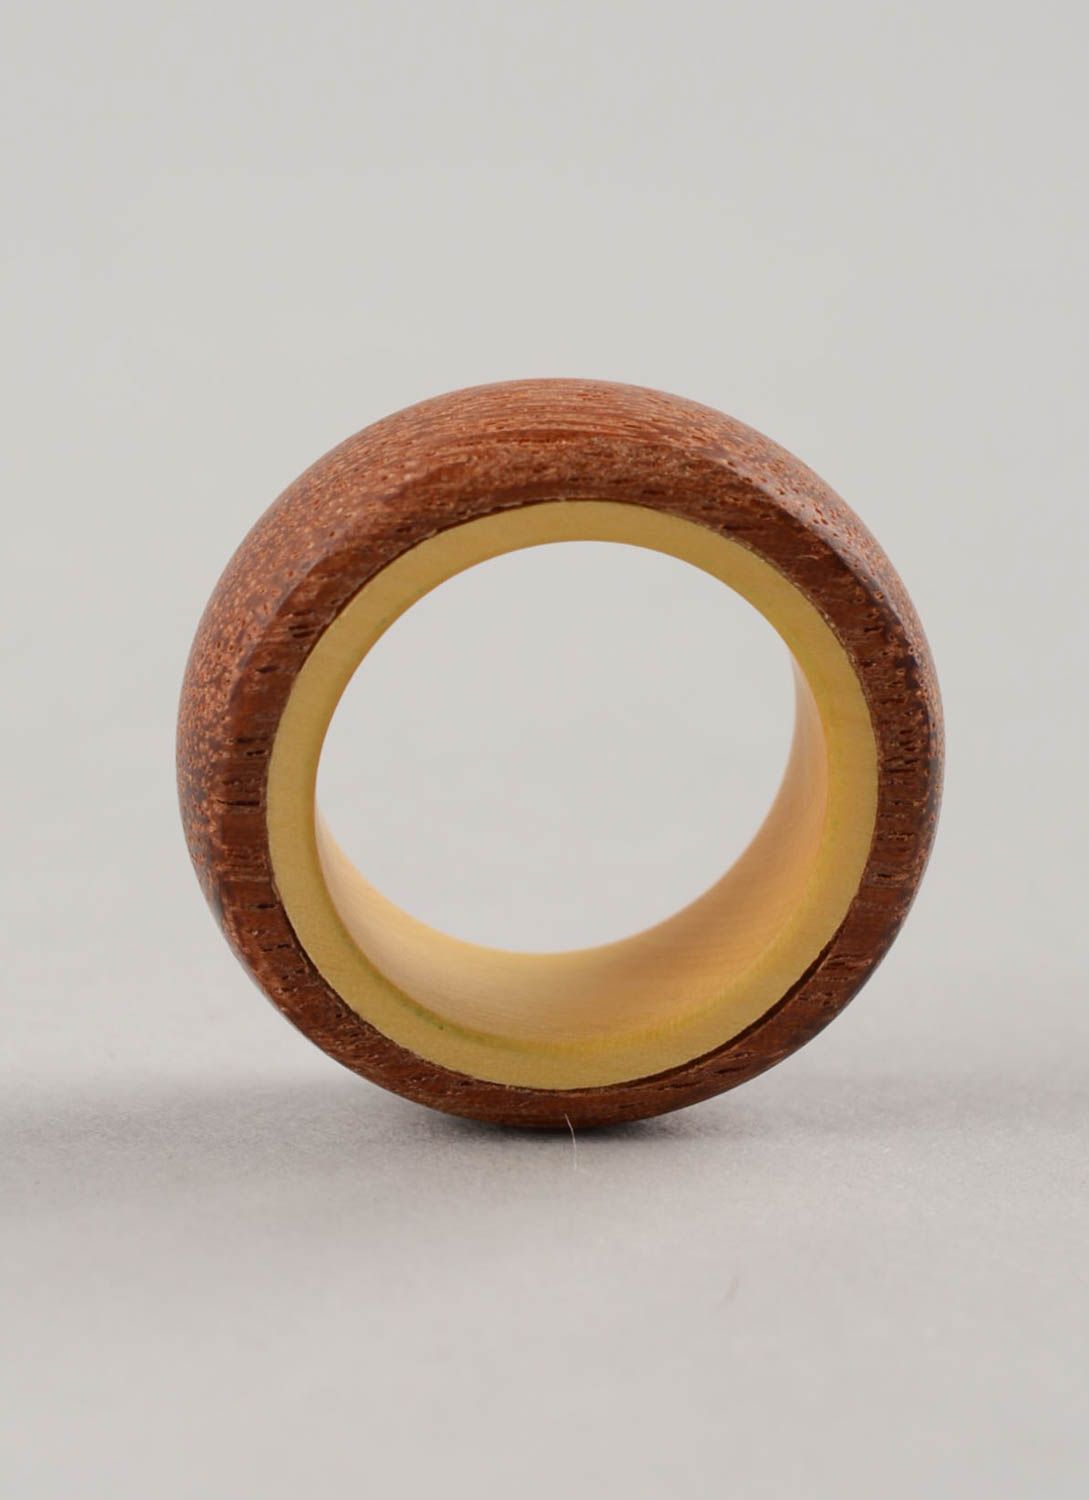 Уникальный авторский аксессуар кольцо ручной работы из дерева унисекс эко стиль фото 3